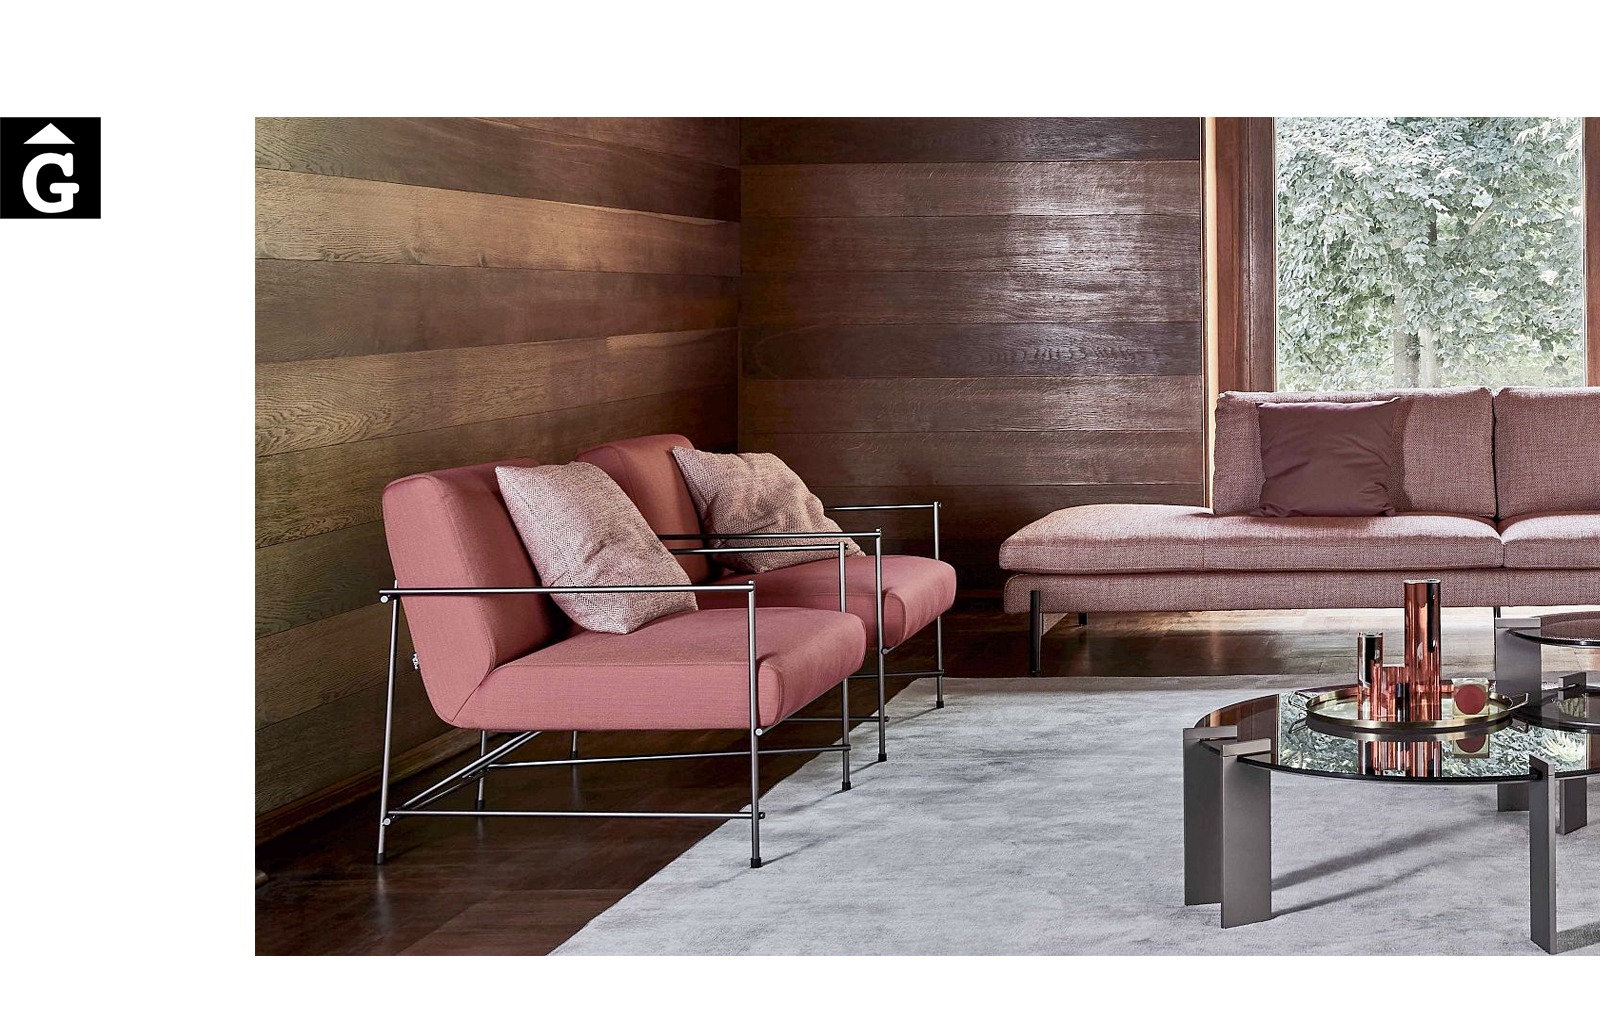 Butaca Kyo ambient tons terra – Ditre Italia Sofas disseny i qualitat alta by mobles Gifreu